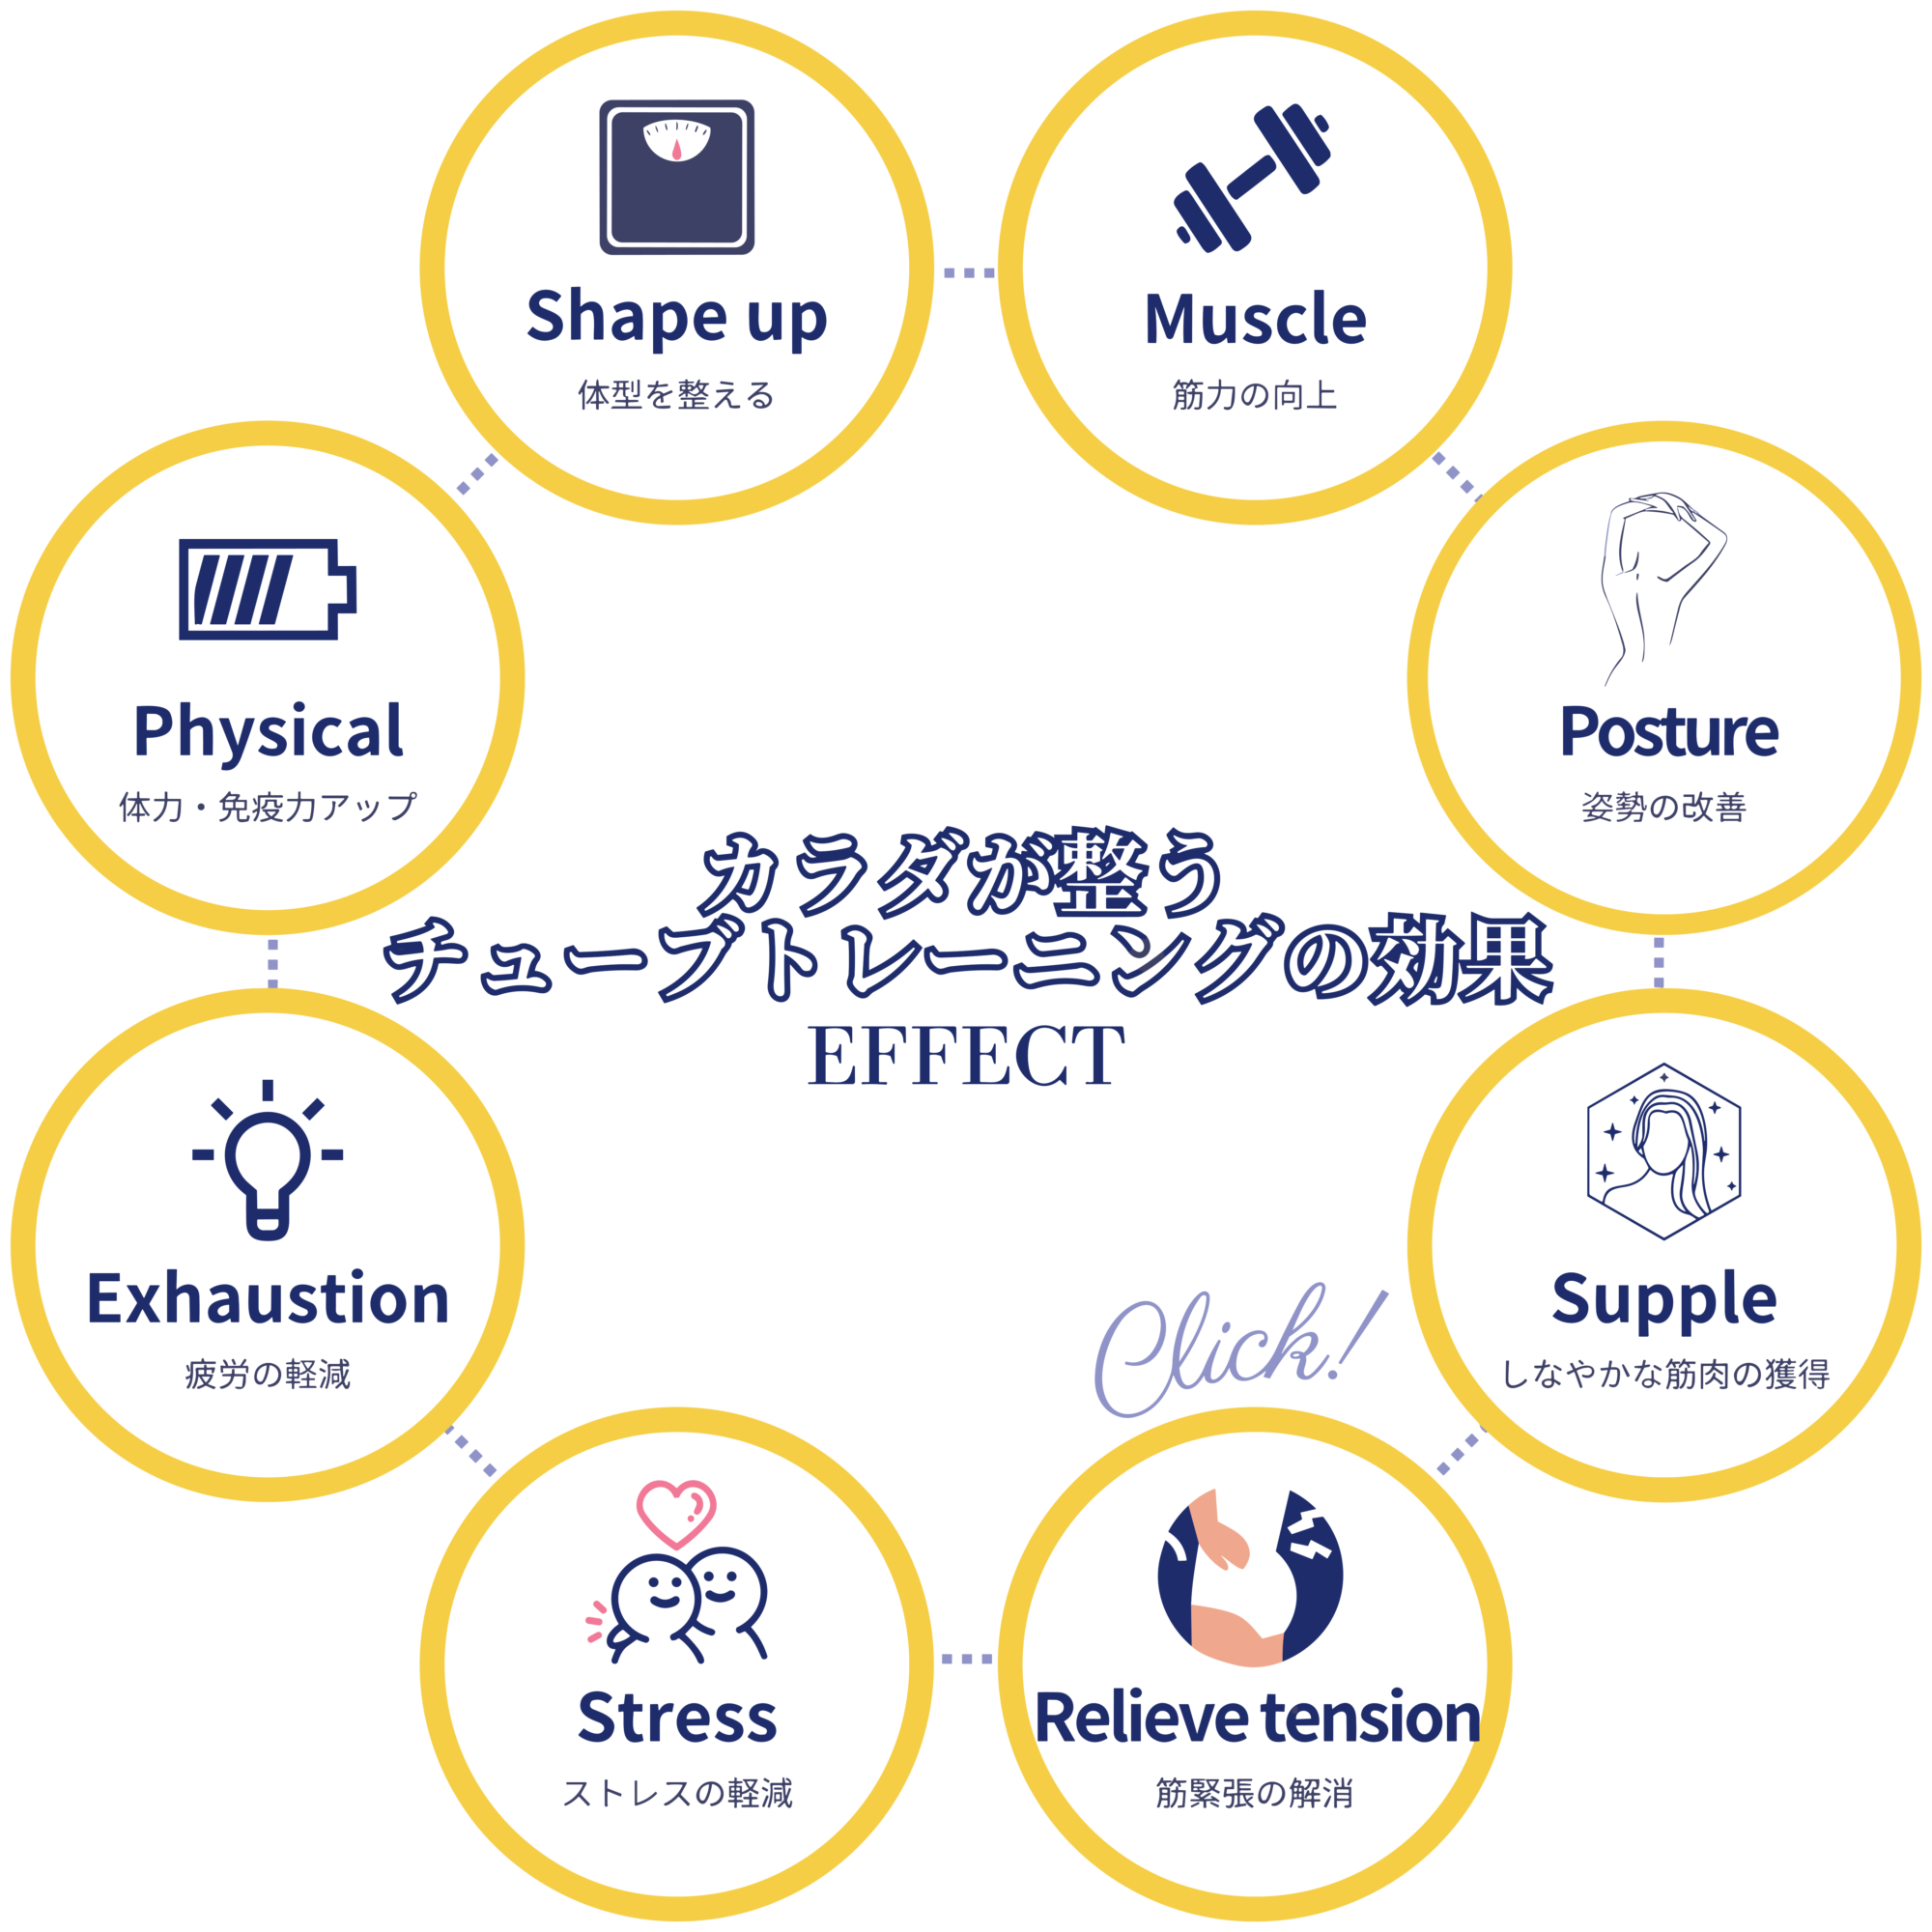 カラダが整うチューブトレーニングの効果 EFFECT diet 健康的な体重維持 Muscle 筋力の向上 Physical 体力・免疫力アップ Posture 姿勢の改善 Exhaustion 疲労の軽減 Supple しなやかな筋肉の獲得 Stress ストレスの軽減 Relieve Tension 筋緊張の解消